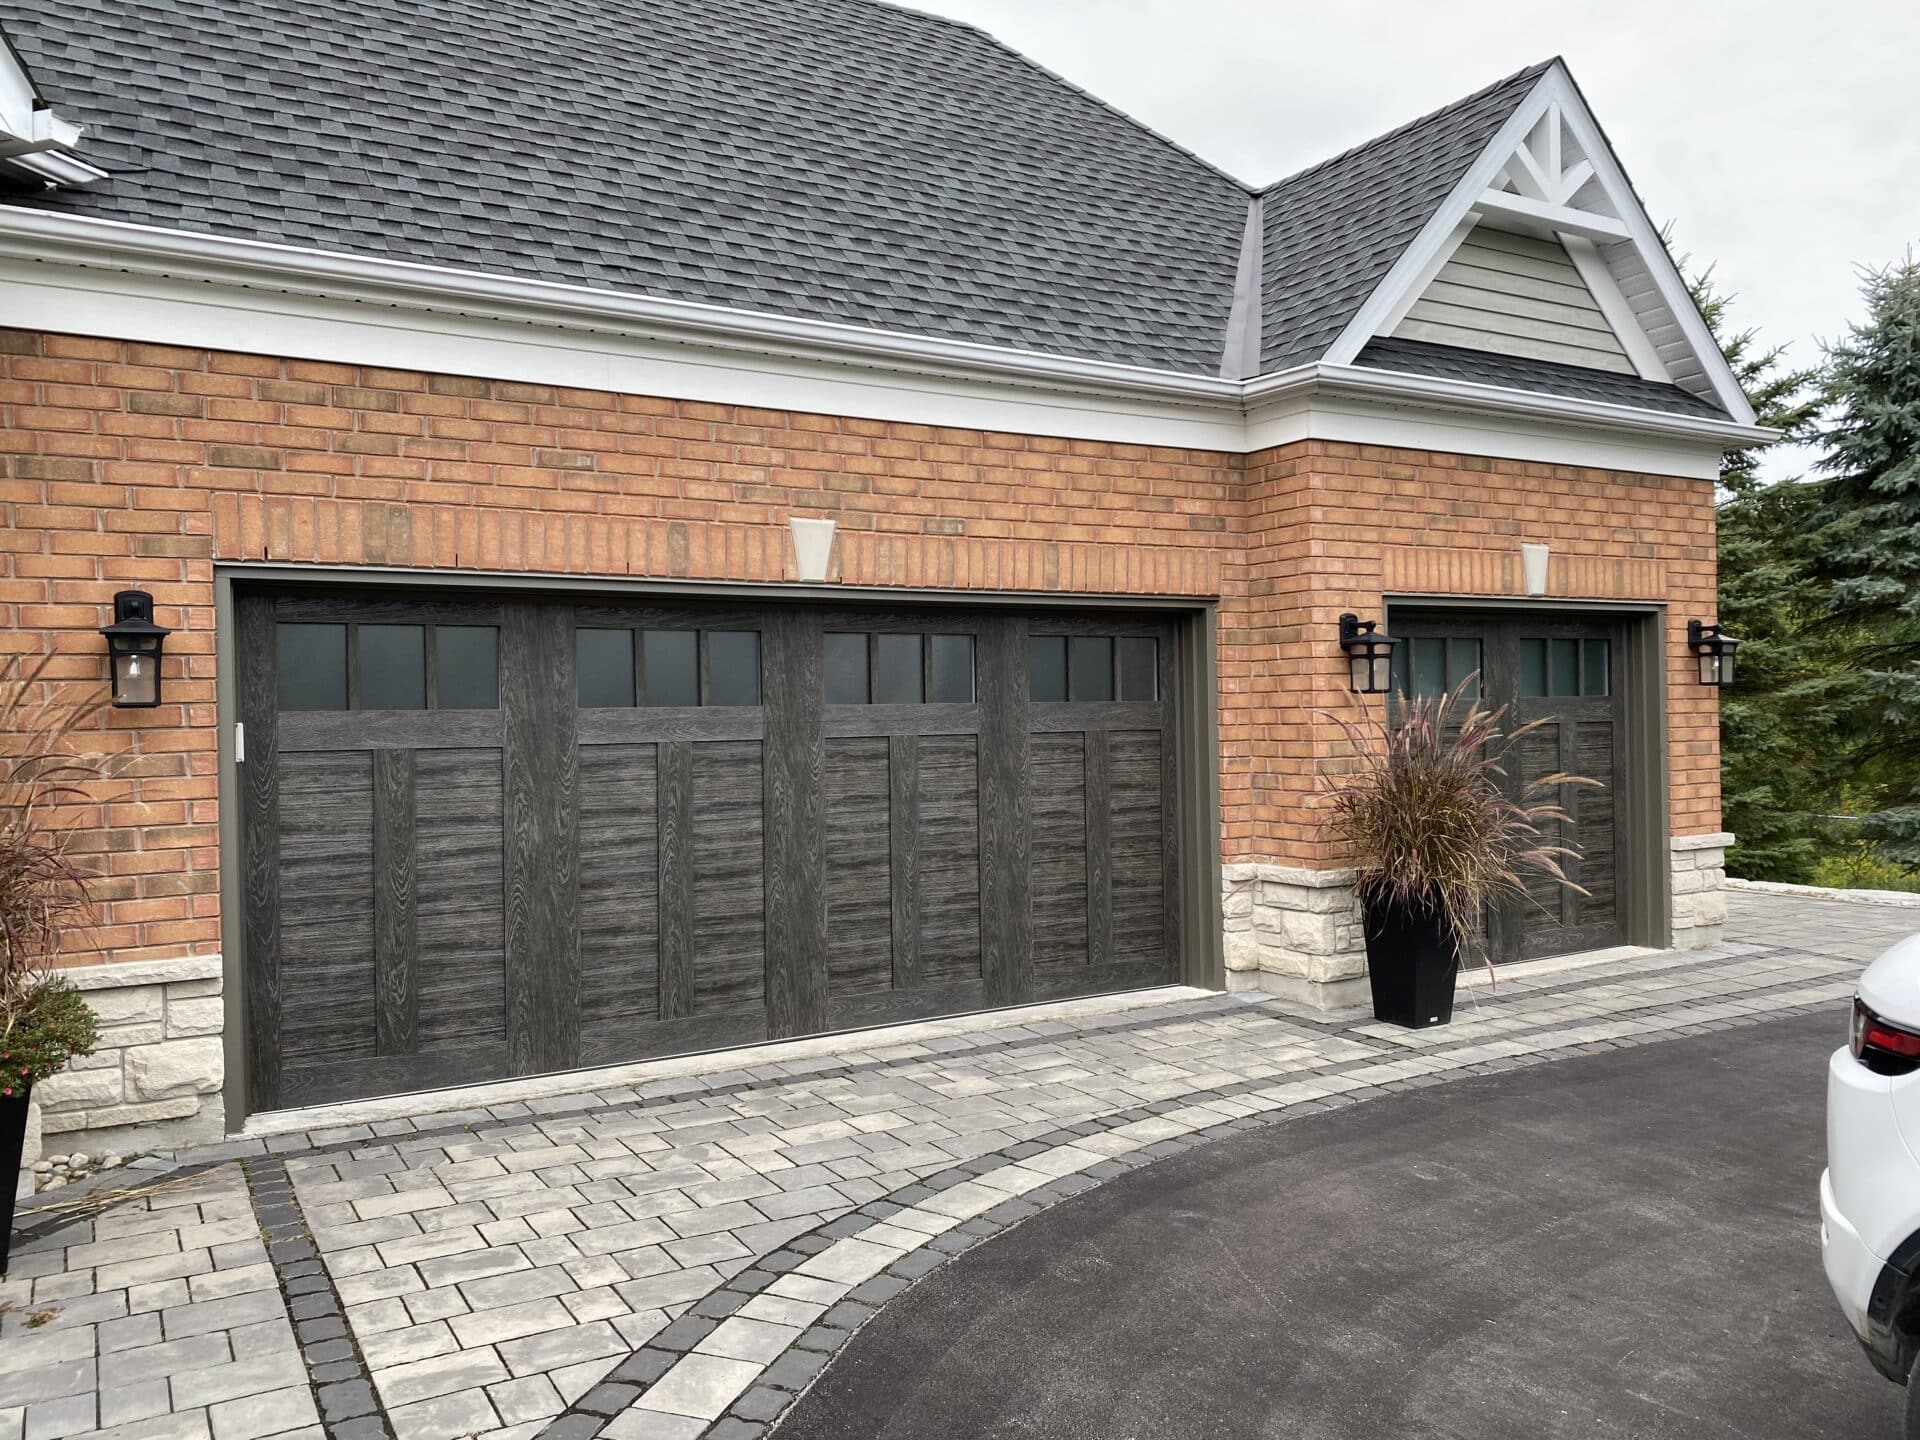 Replacement Garage Doors in Alliston Ontario Installed by Canadoor Garage Doors